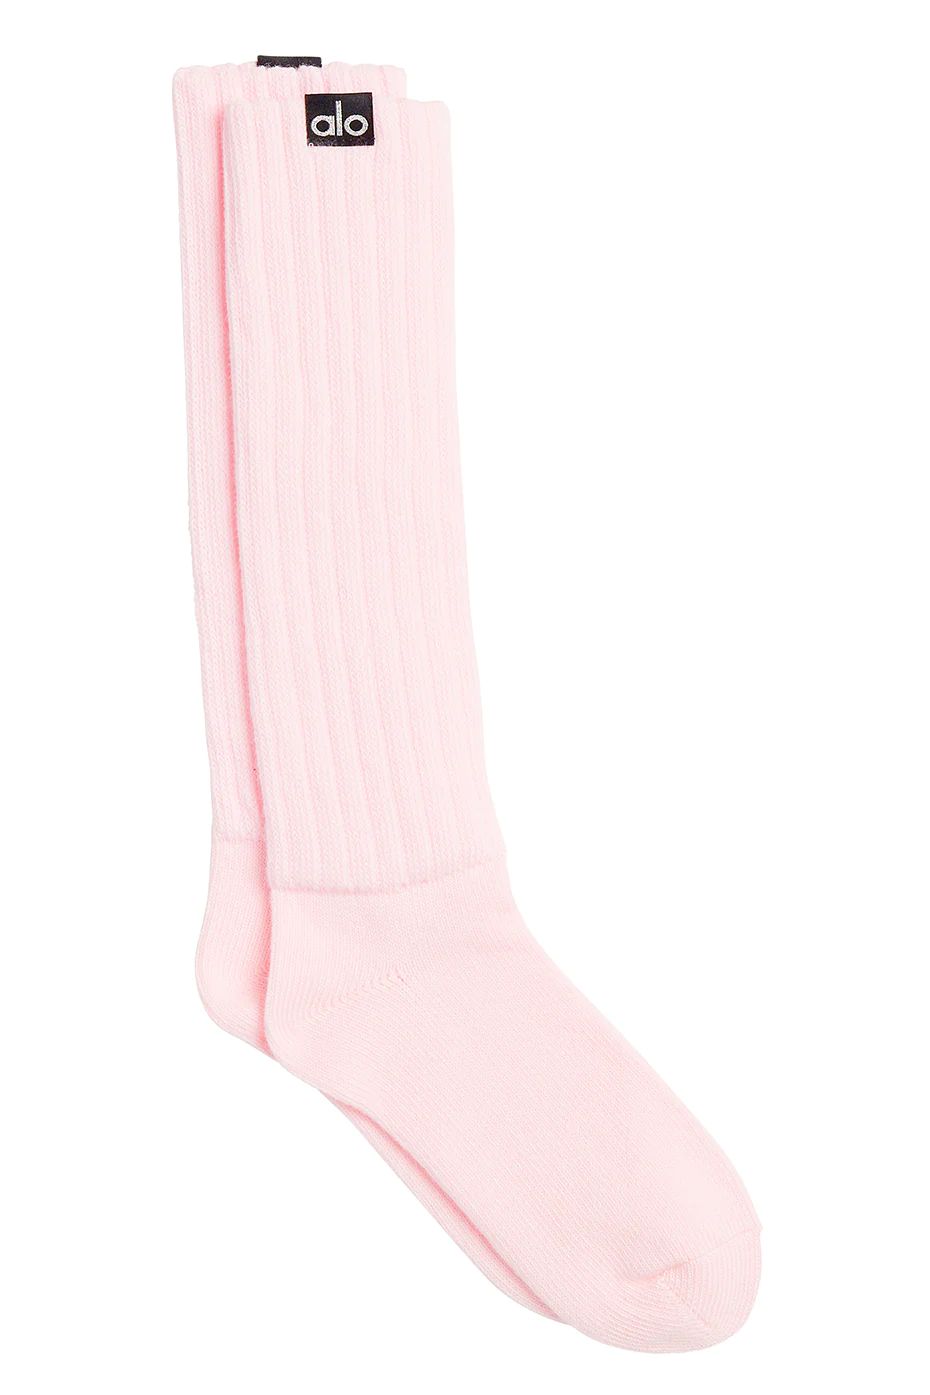 Women's Scrunch Socks in Powder Pink, Size: M/L (8-11) | Alo YogaÅ½ | Alo Yoga